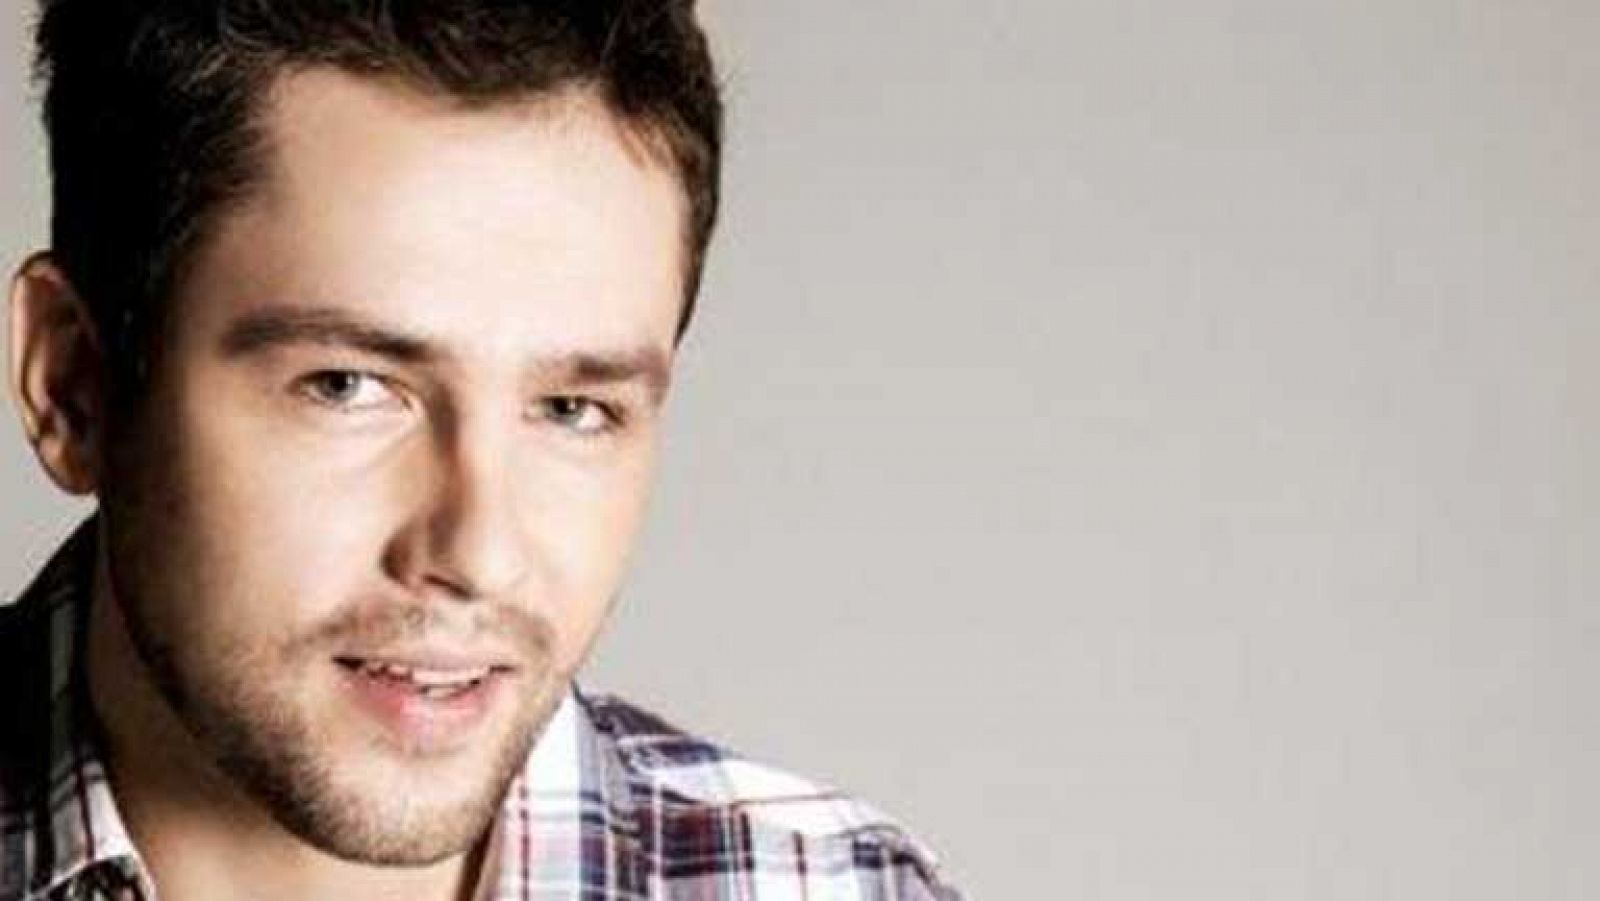 Eurovisión 2013 - Andrius Pojavis representa a Lituania en Eurovisión 2013 con la canción "Something"